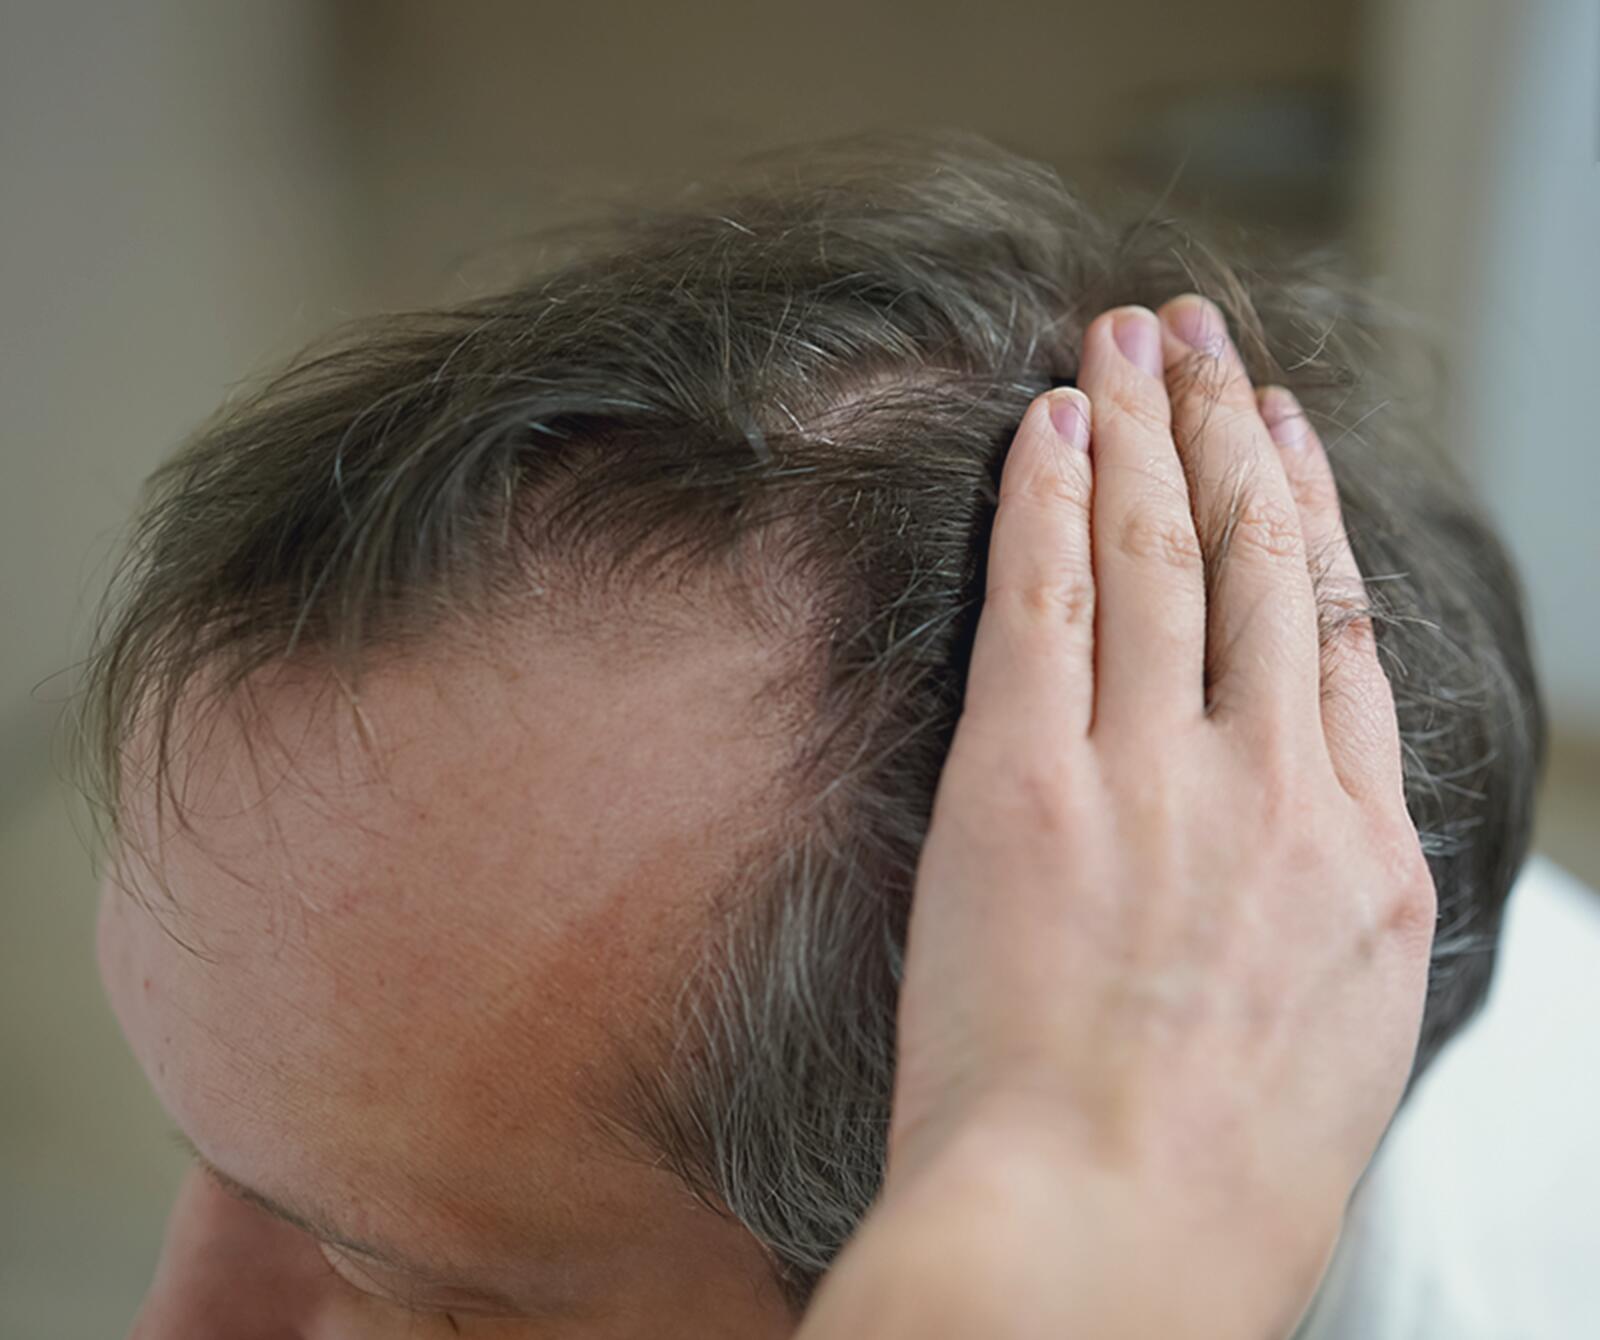 Welche Mittel helfen, um Haarausfall zu stoppen?